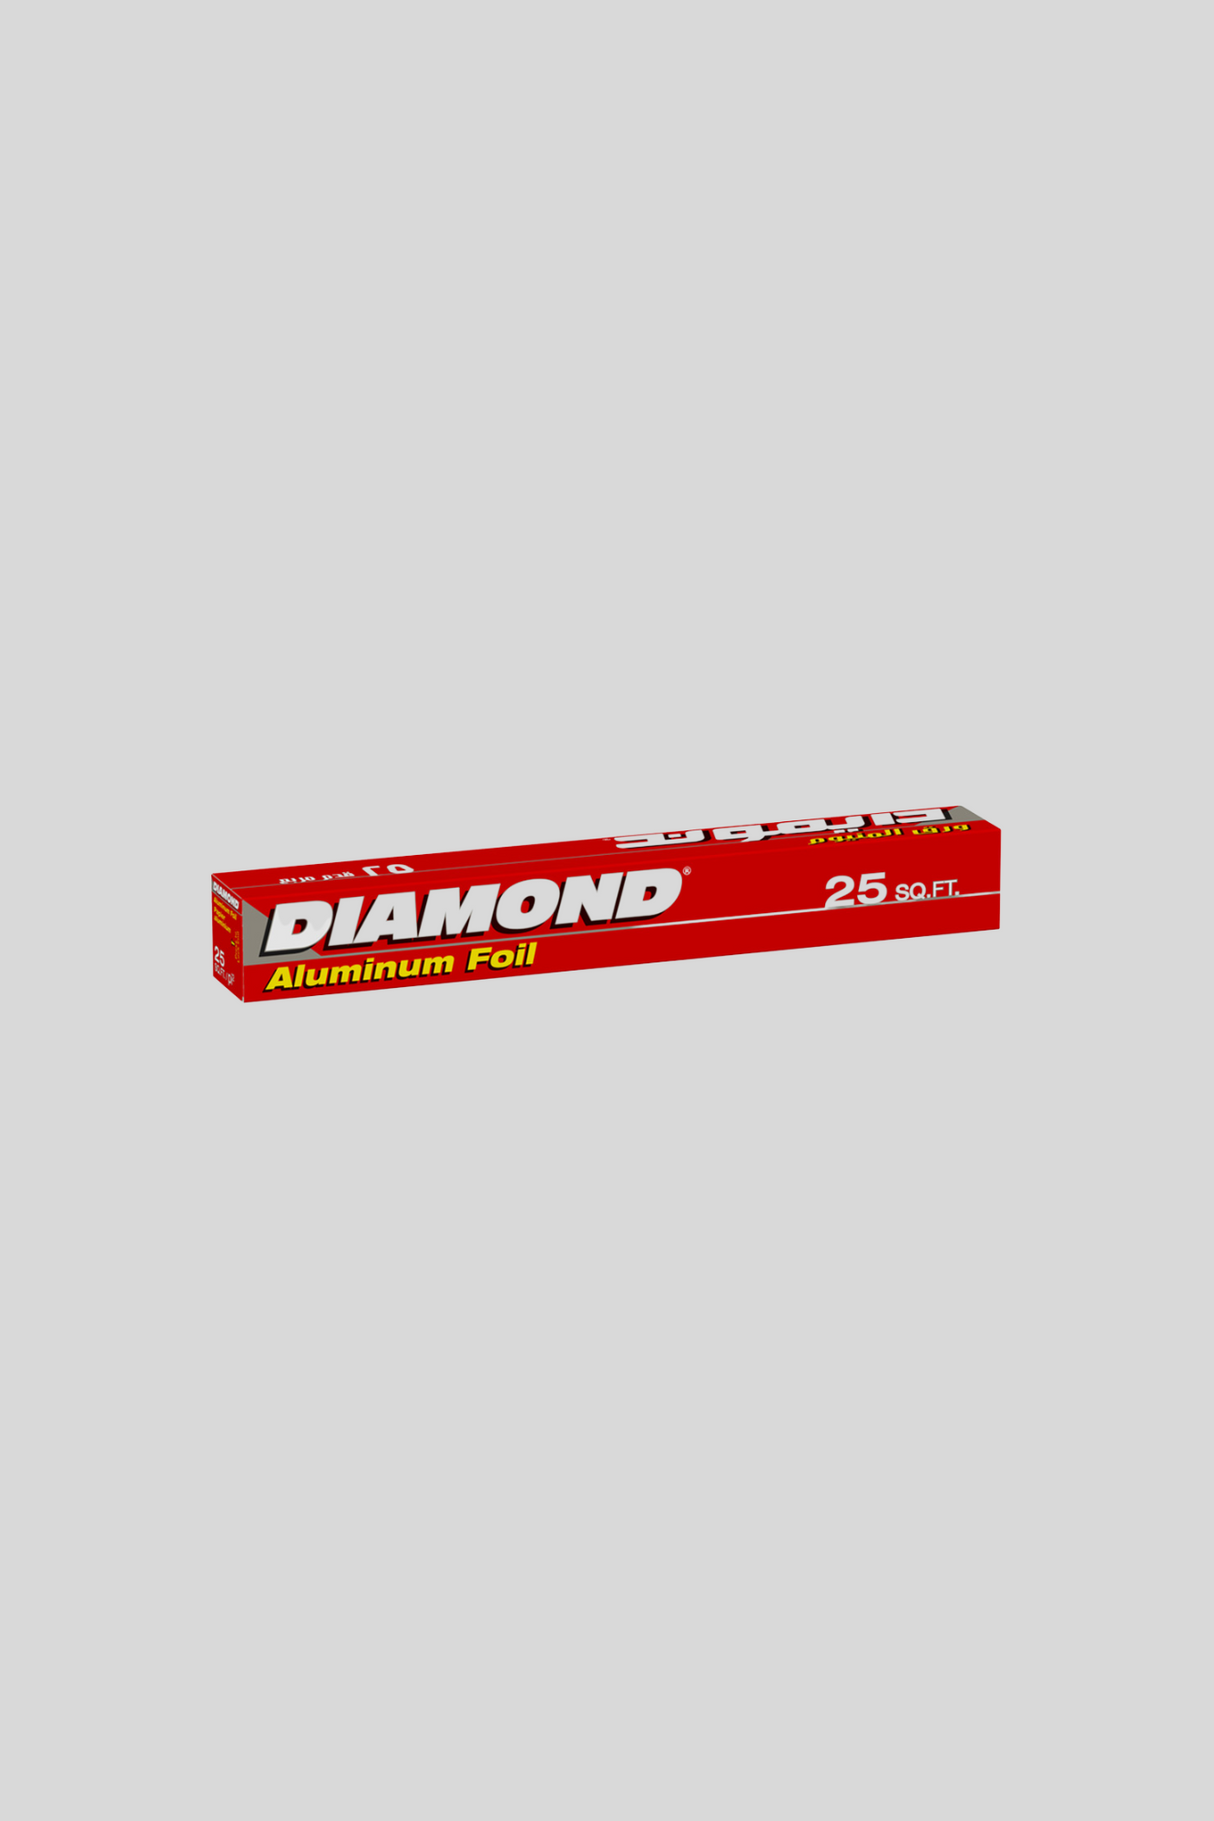 diamond aluminum  foil 25 sqft